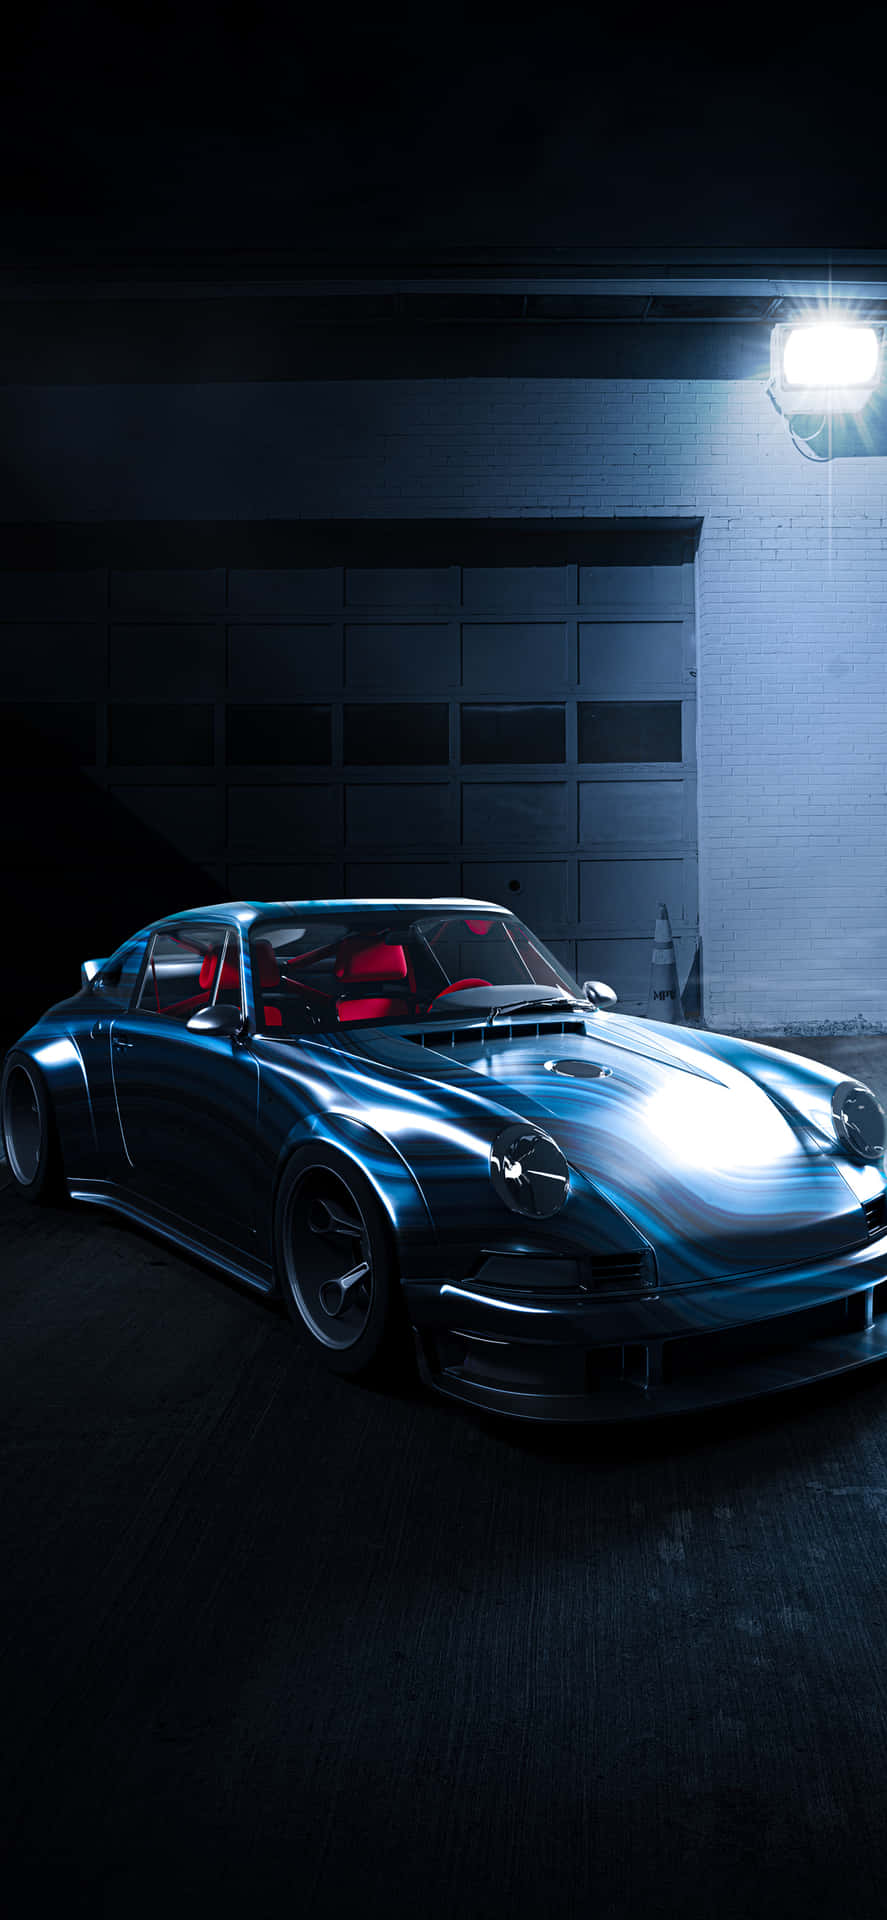 Porsche iPhone Wallpaper: A Stunning Visual Experience Wallpaper